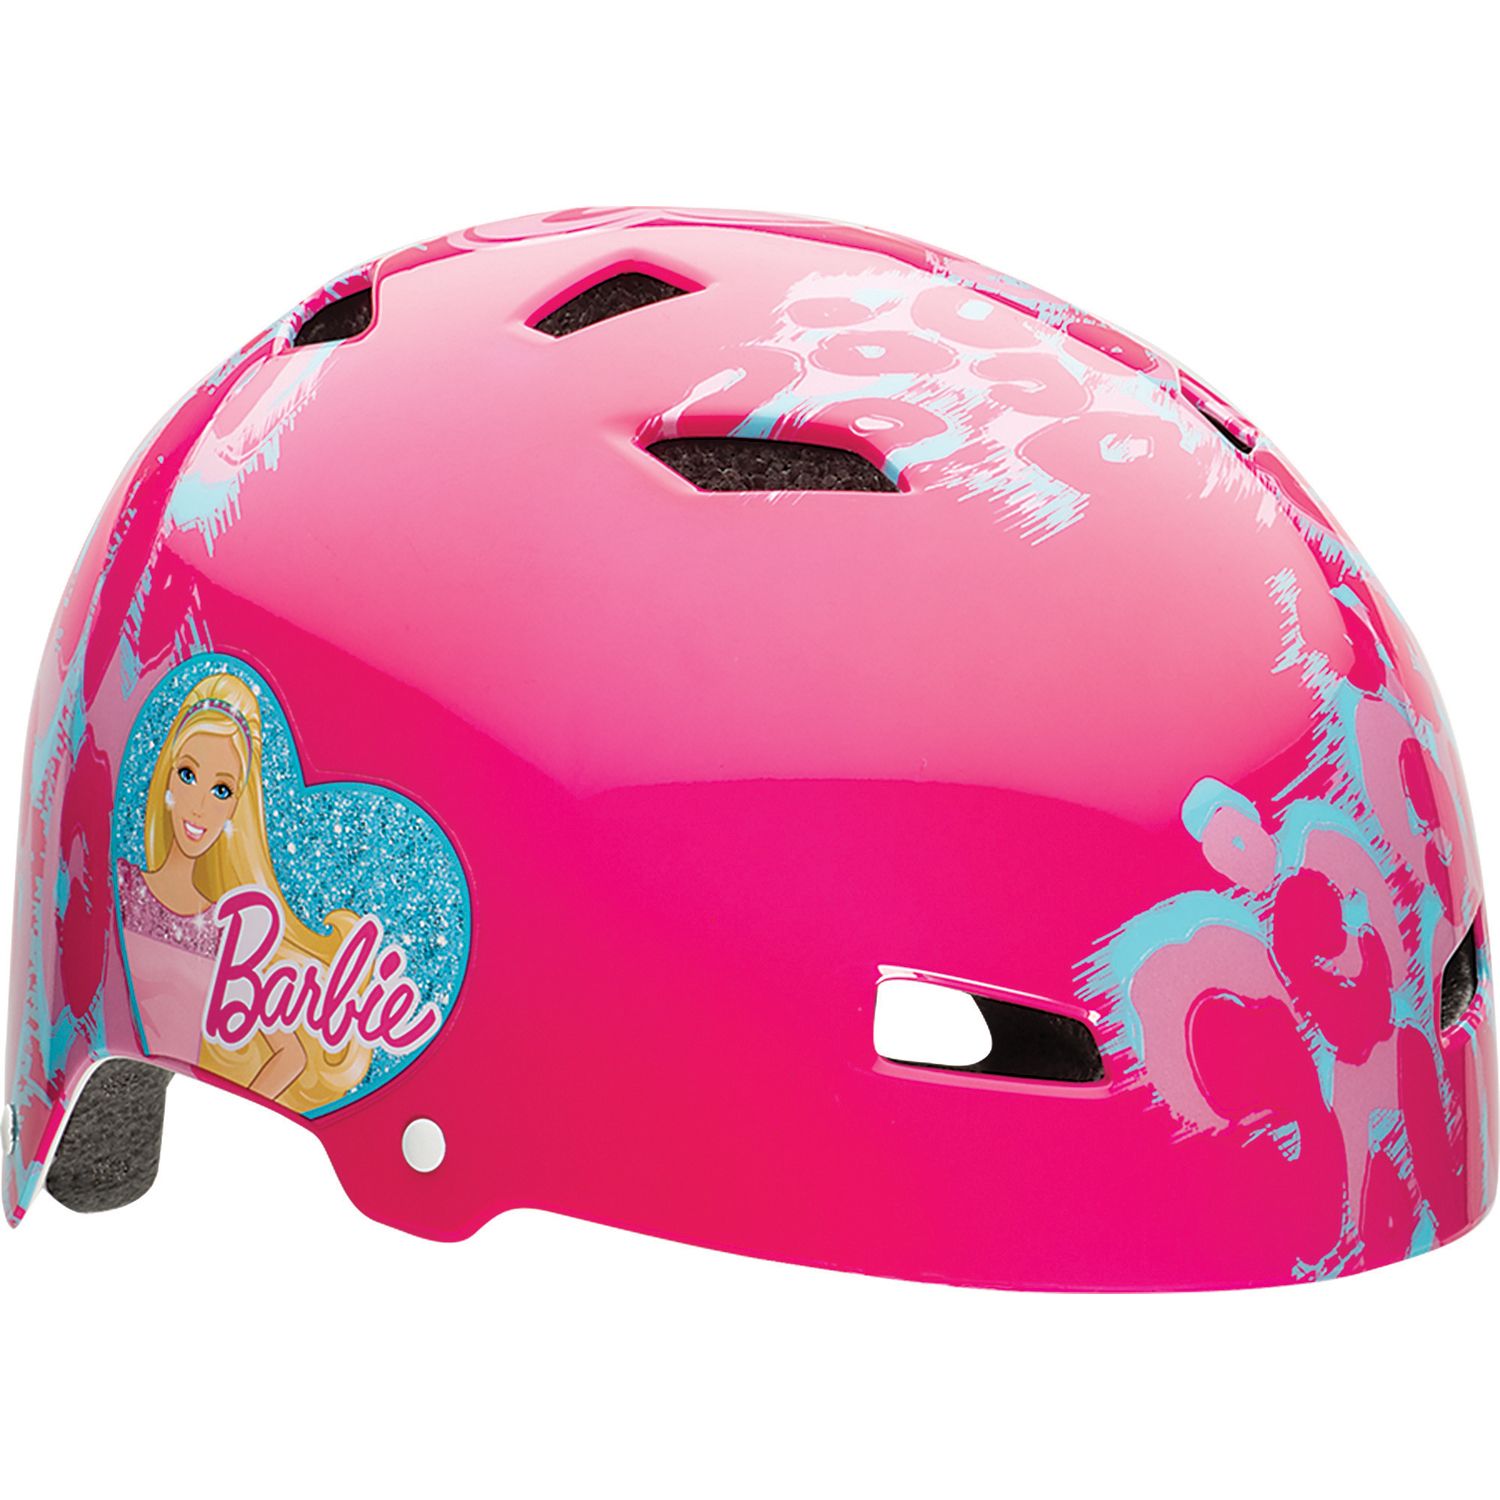 barbie bicycle helmet